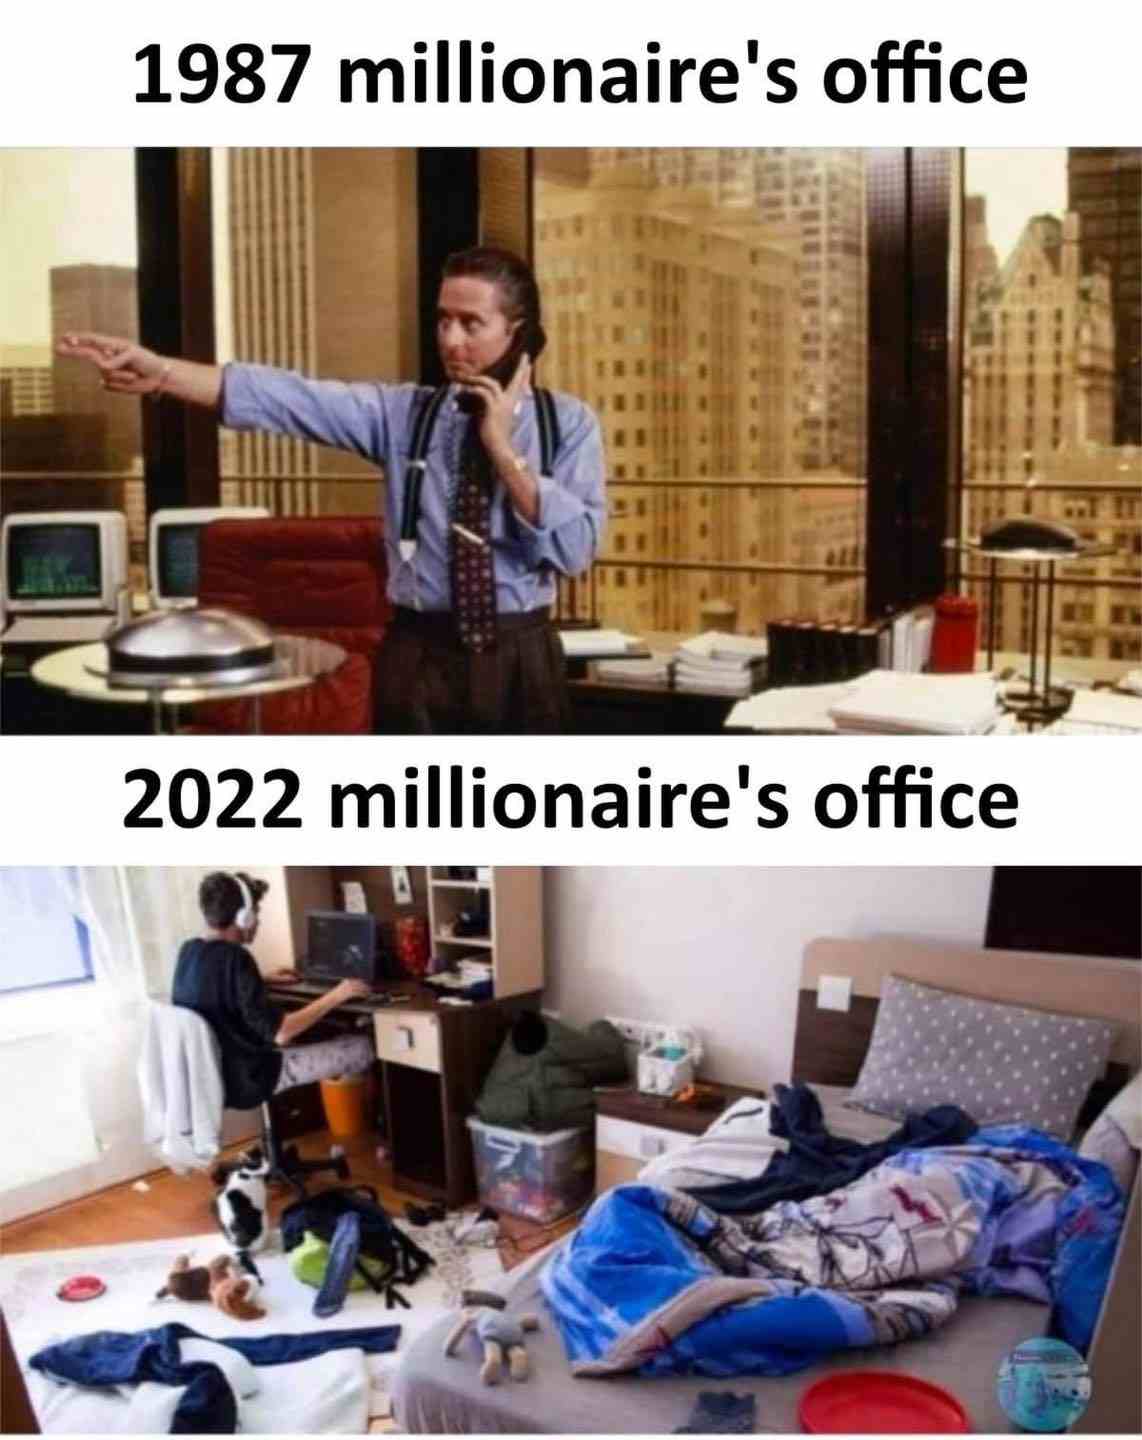 1987 millionaire's office & 2022 millionaire's office